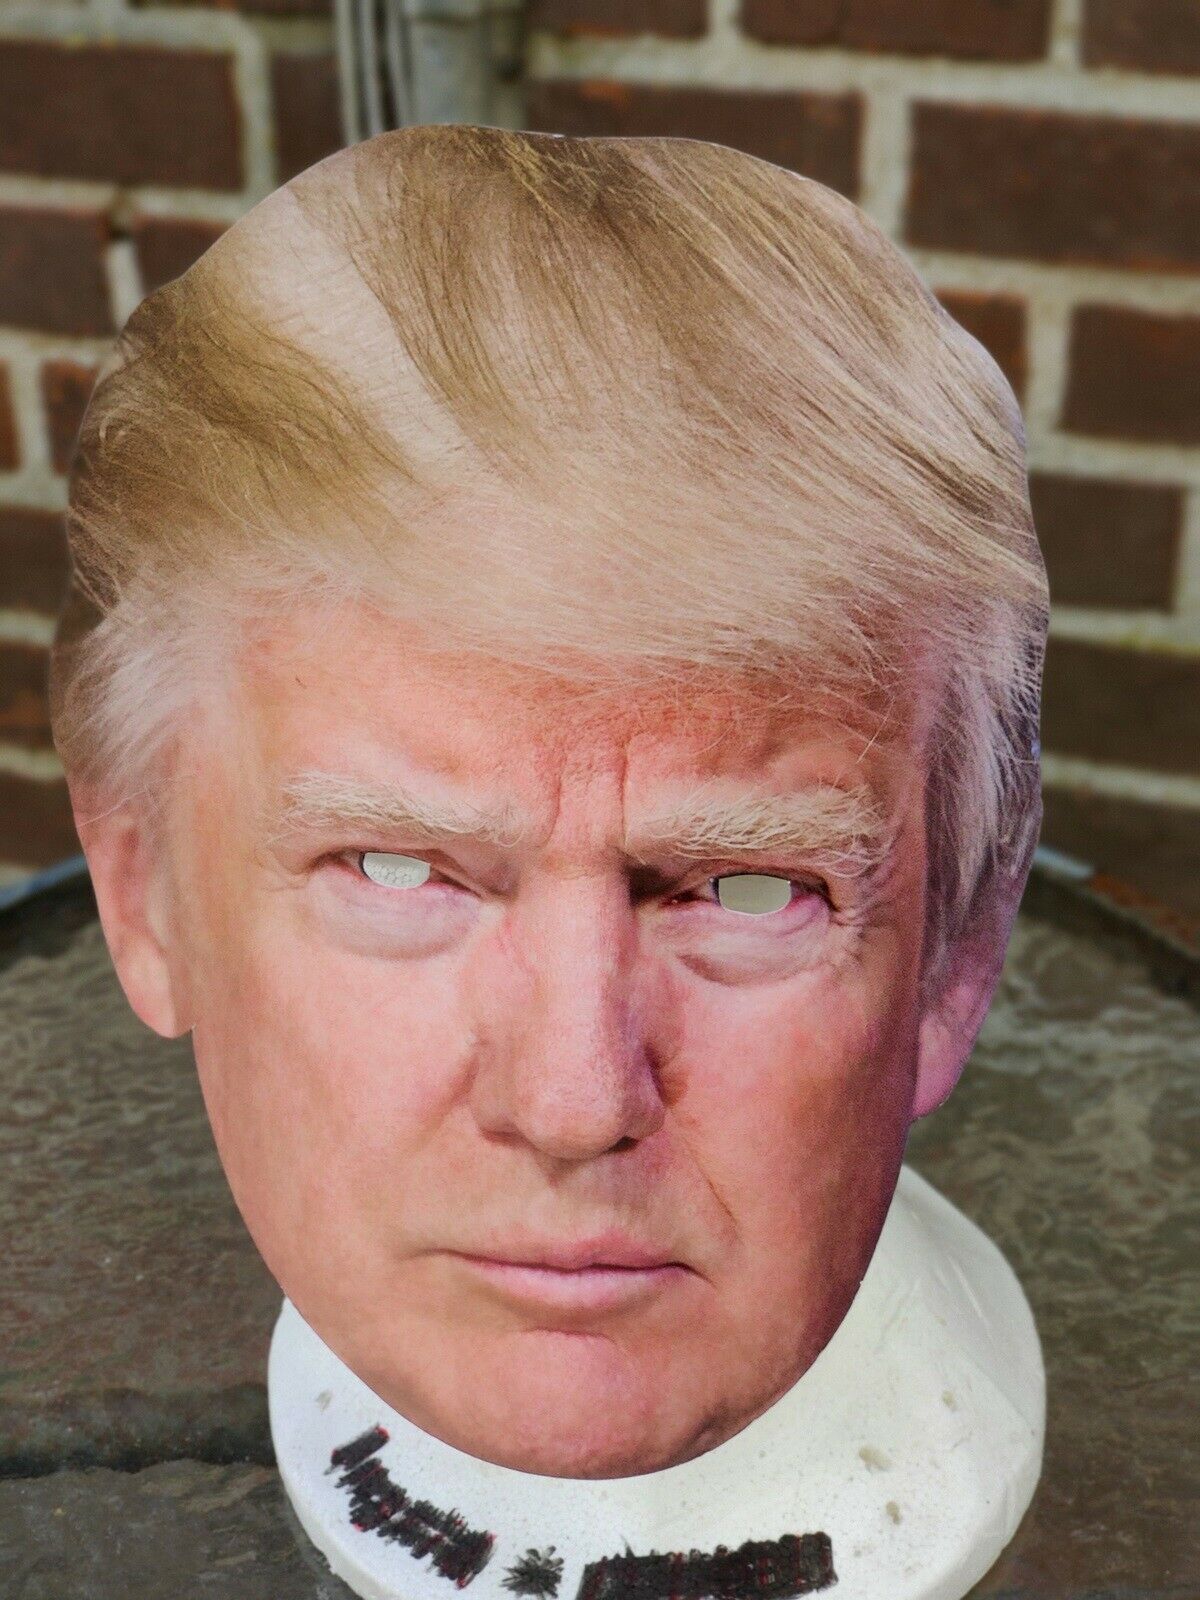 Donald Trump maske – dba.dk – Køb og Salg af og